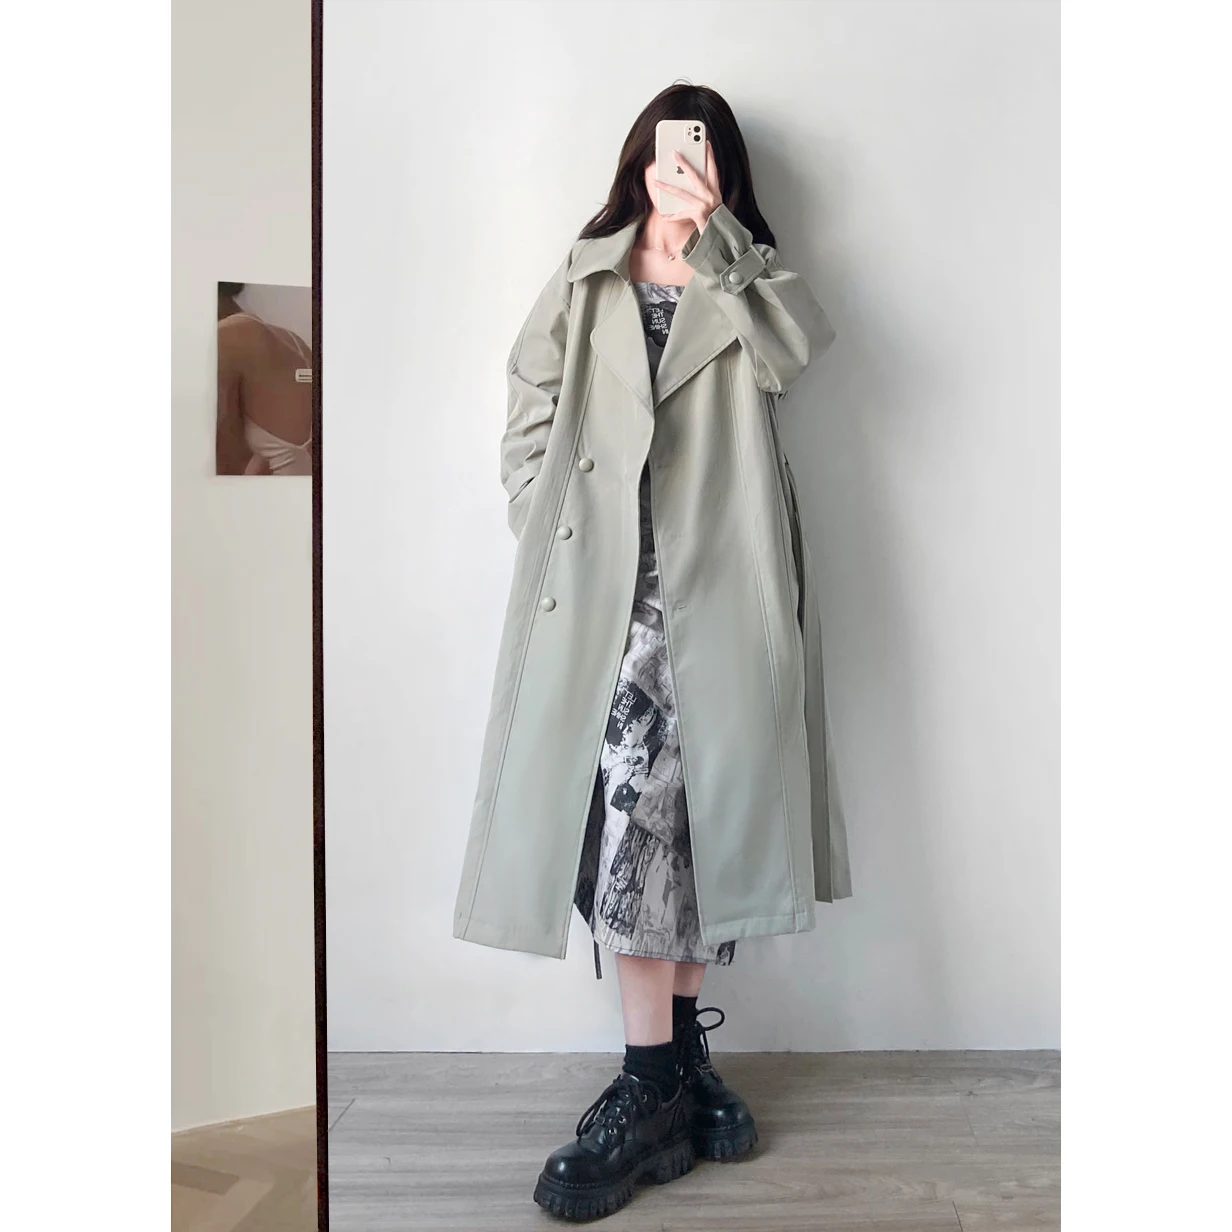 Moda Yeni Haki Pembe Trençkot Kadın Tek göğüslü Uzun Silgi Ceket Kemer Bayan Rüzgarlık Bahar Sonbahar Giyim 0